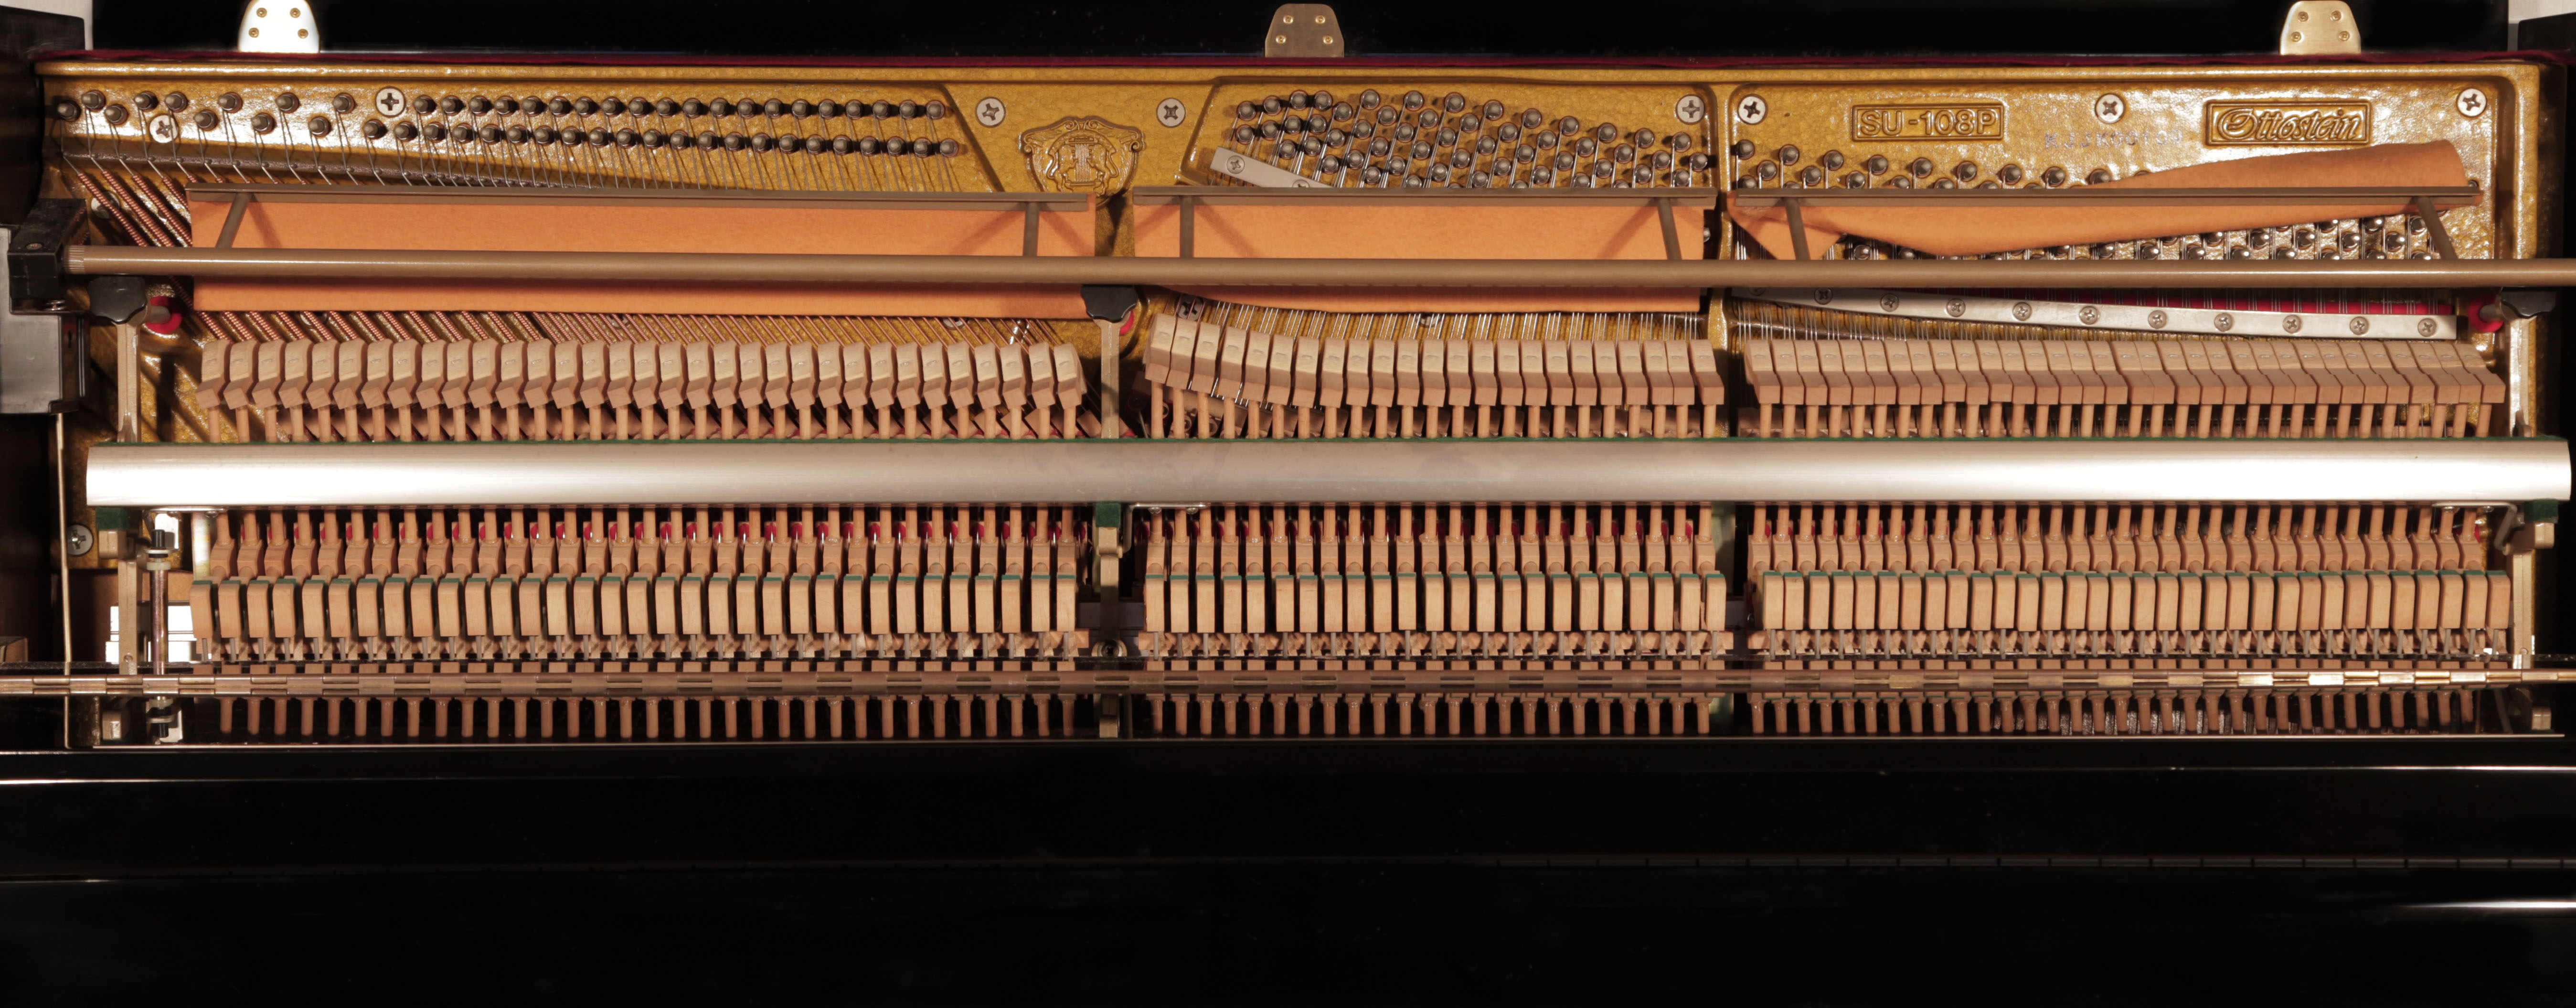 Ottostein instrument.